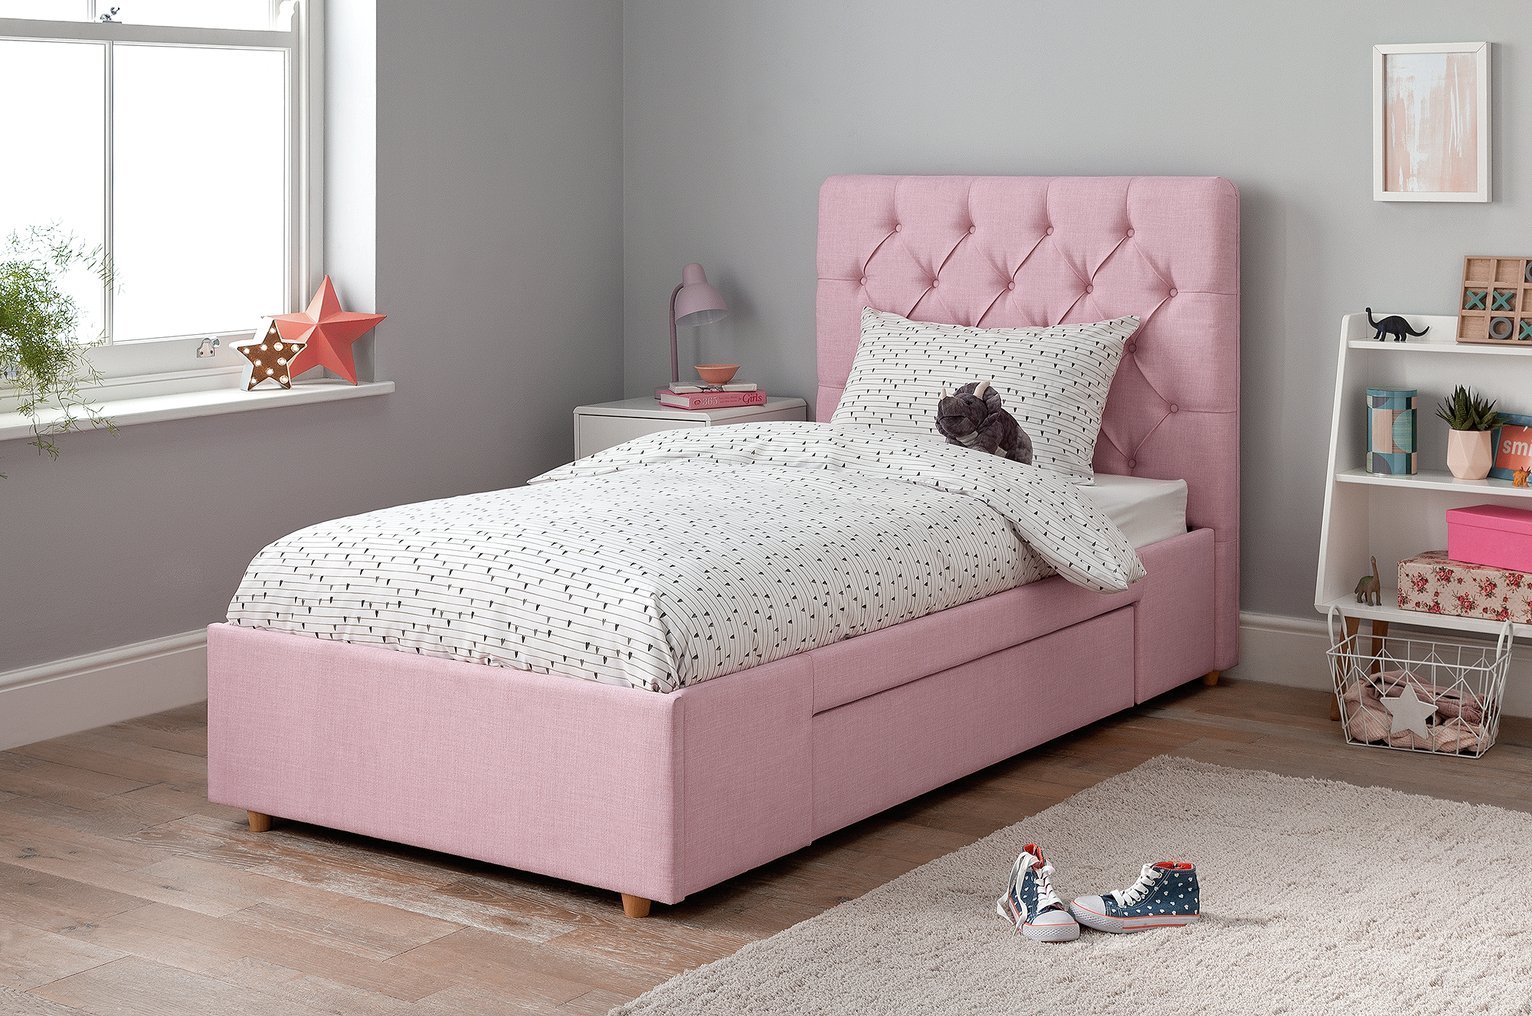 Argos Home Harper Single Bed Frame - Pink